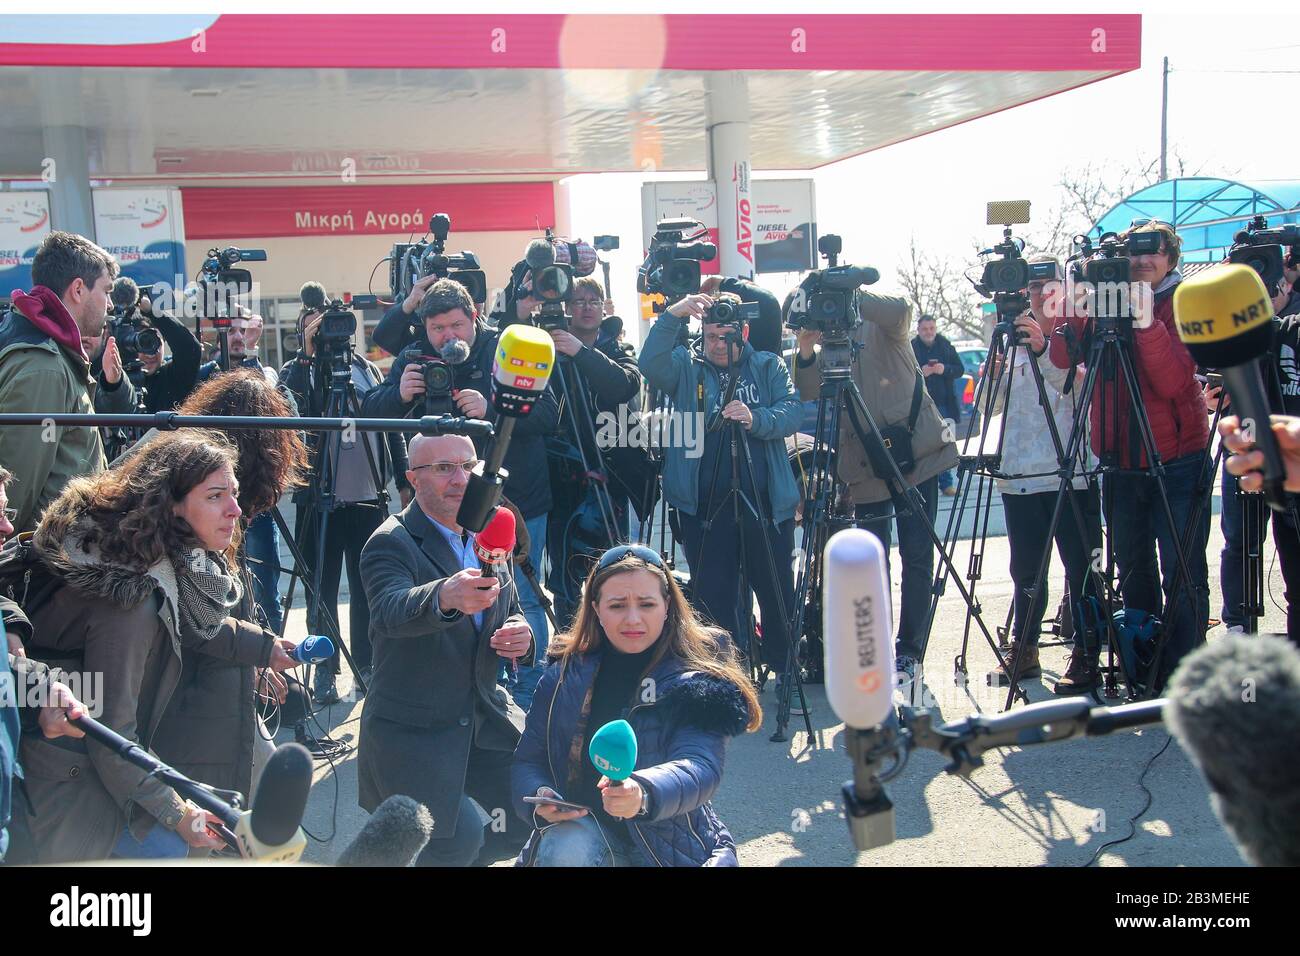 Kastanies, Evros, Grèce - 1 mars 2020: Les journalistes, les équipes de télévision et le photojournalisme du monde entier se sont réunis au grec-turc Banque D'Images